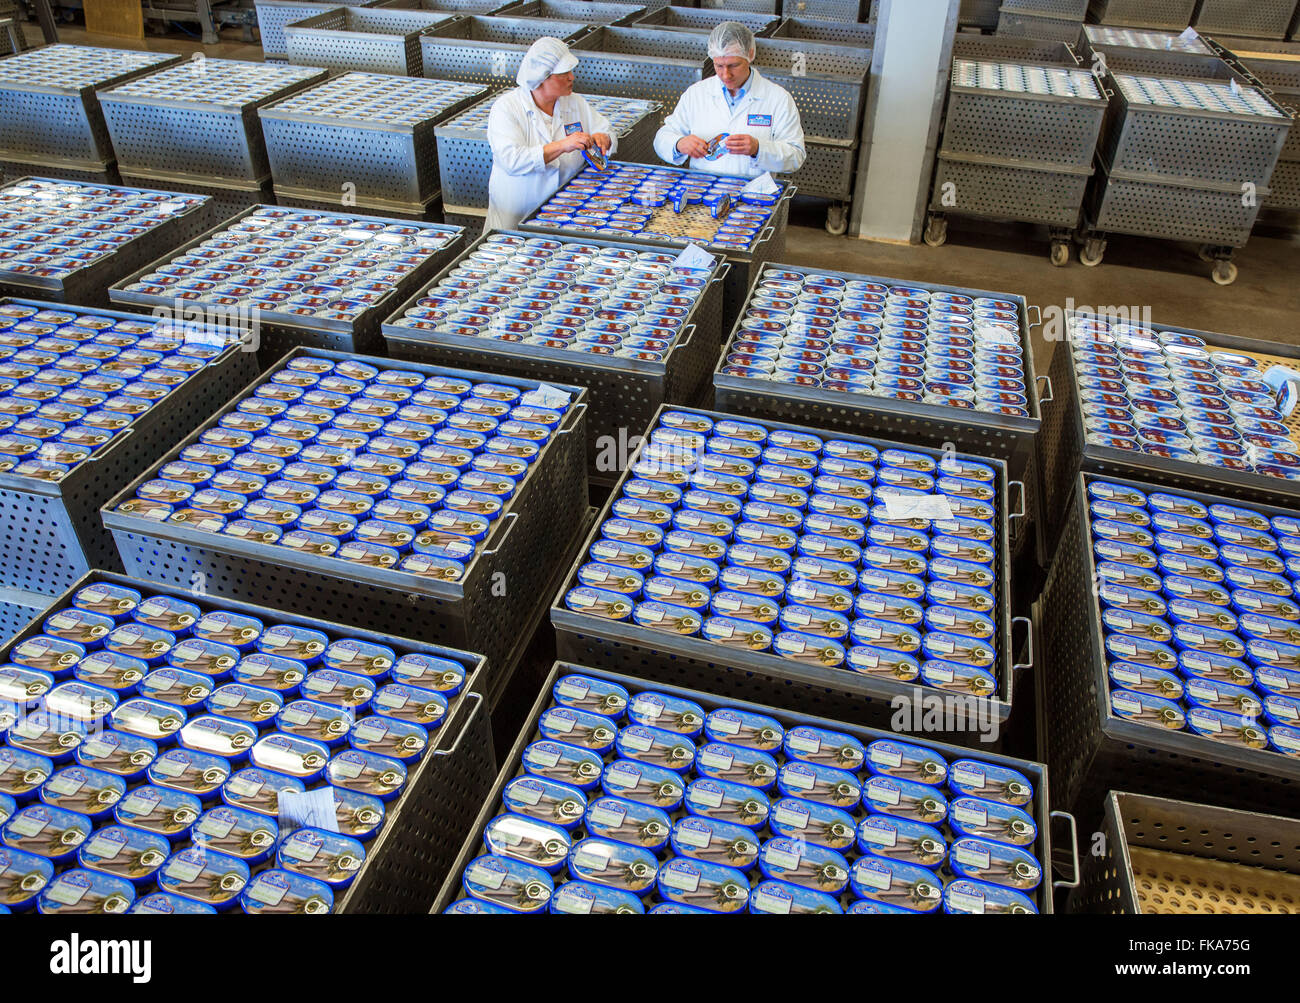 Karlsruhe, Allemagne. 3e Mar, 2016. Conserves de poisson en cours de vérification par l'usine manager Carsten Mueller à Rügen Fisch AG in Sassnitz, Allemagne, 3 mars 2016. Selon l'information de l'entreprise, 70 millions de boîtes de crème de tomates en filet de maquereau, hareng au curry-ananas-sauce, scomber mix et d'autres sortes sont produits chaque année. L'entreprise est leader du marché de l'Allemagne avec d'autres usines à Luebeck, Rostock et la Lituanie. Début février 2016, transformateur de poisson asiatique Thai Union européenne ont acheté 51  % des actions pour 42,2 millions d'Euros. PHOTO : JENS BUETTNER/dpa/Alamy Live News Banque D'Images